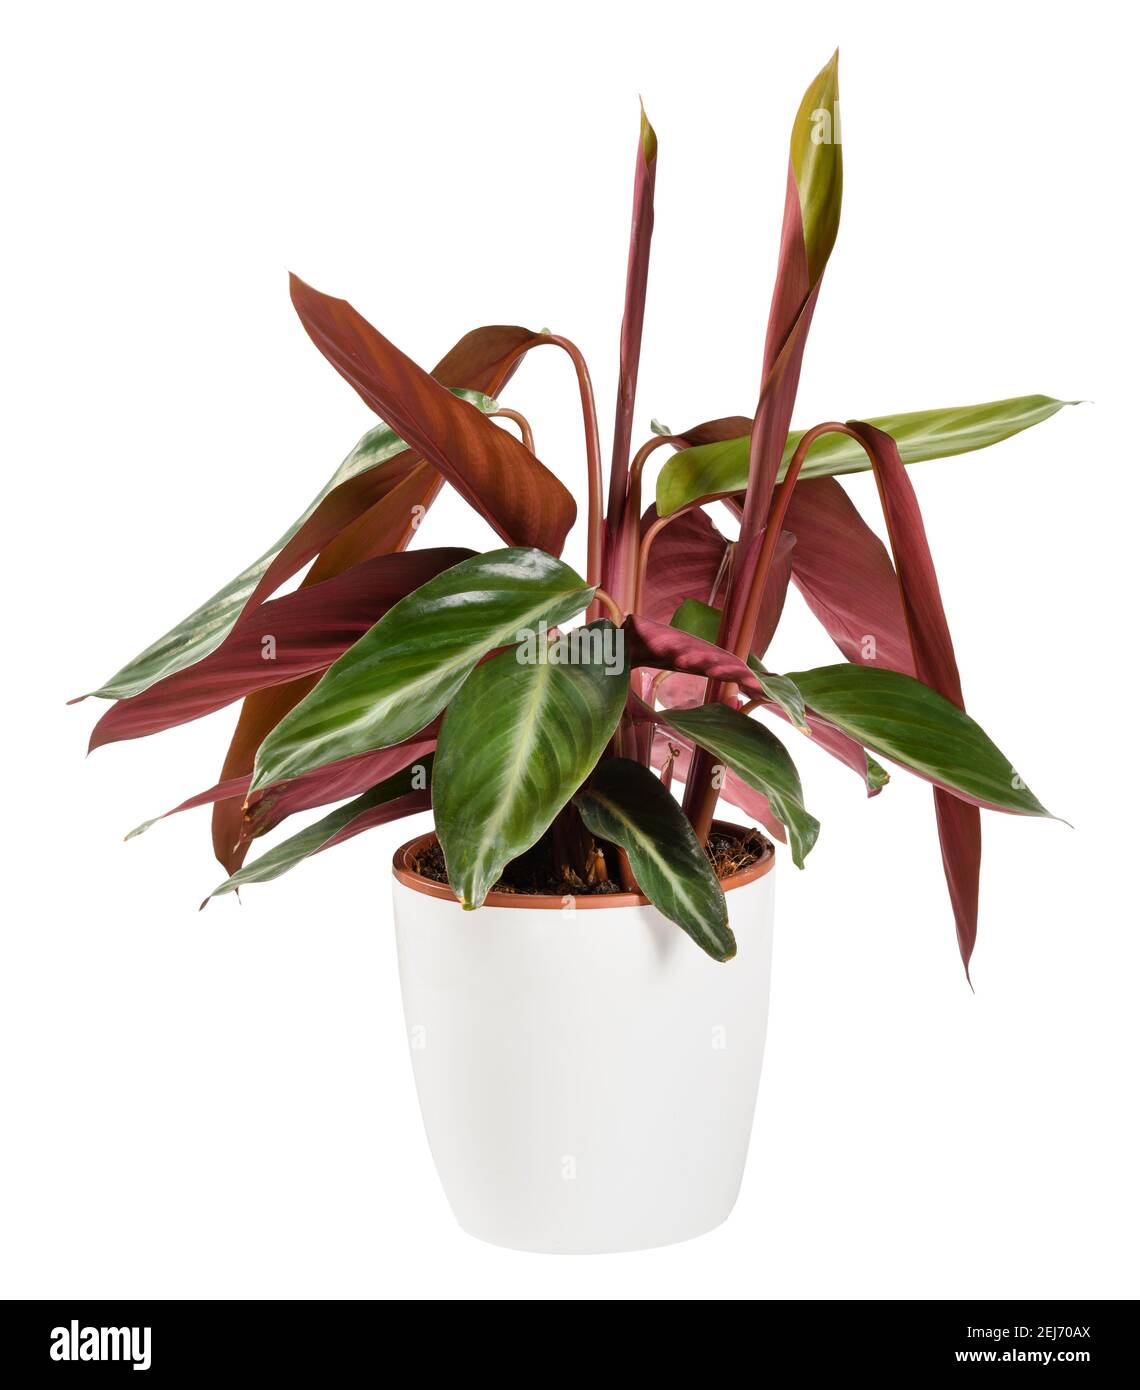 Plante en pot triostar de Calathea montrant le curling ou le roulement De la feuille variégée ornementale typique des plantes de prière dans une vue de côté rapprochée est Banque D'Images